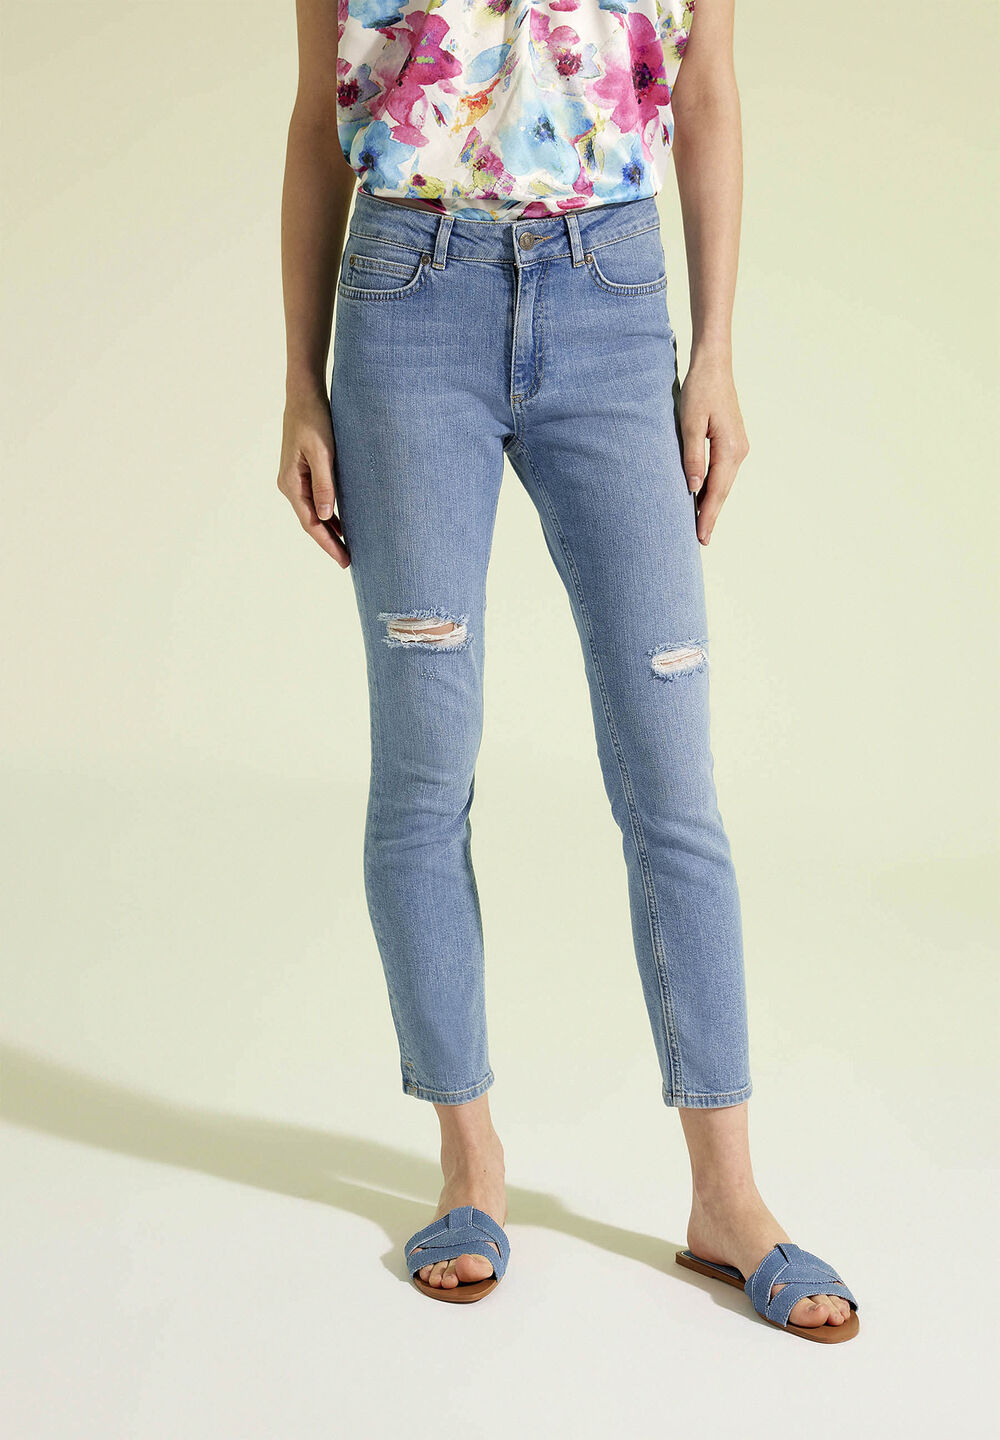 verkürzte Jeans, Sommer-Kollektion, denimFrontansicht